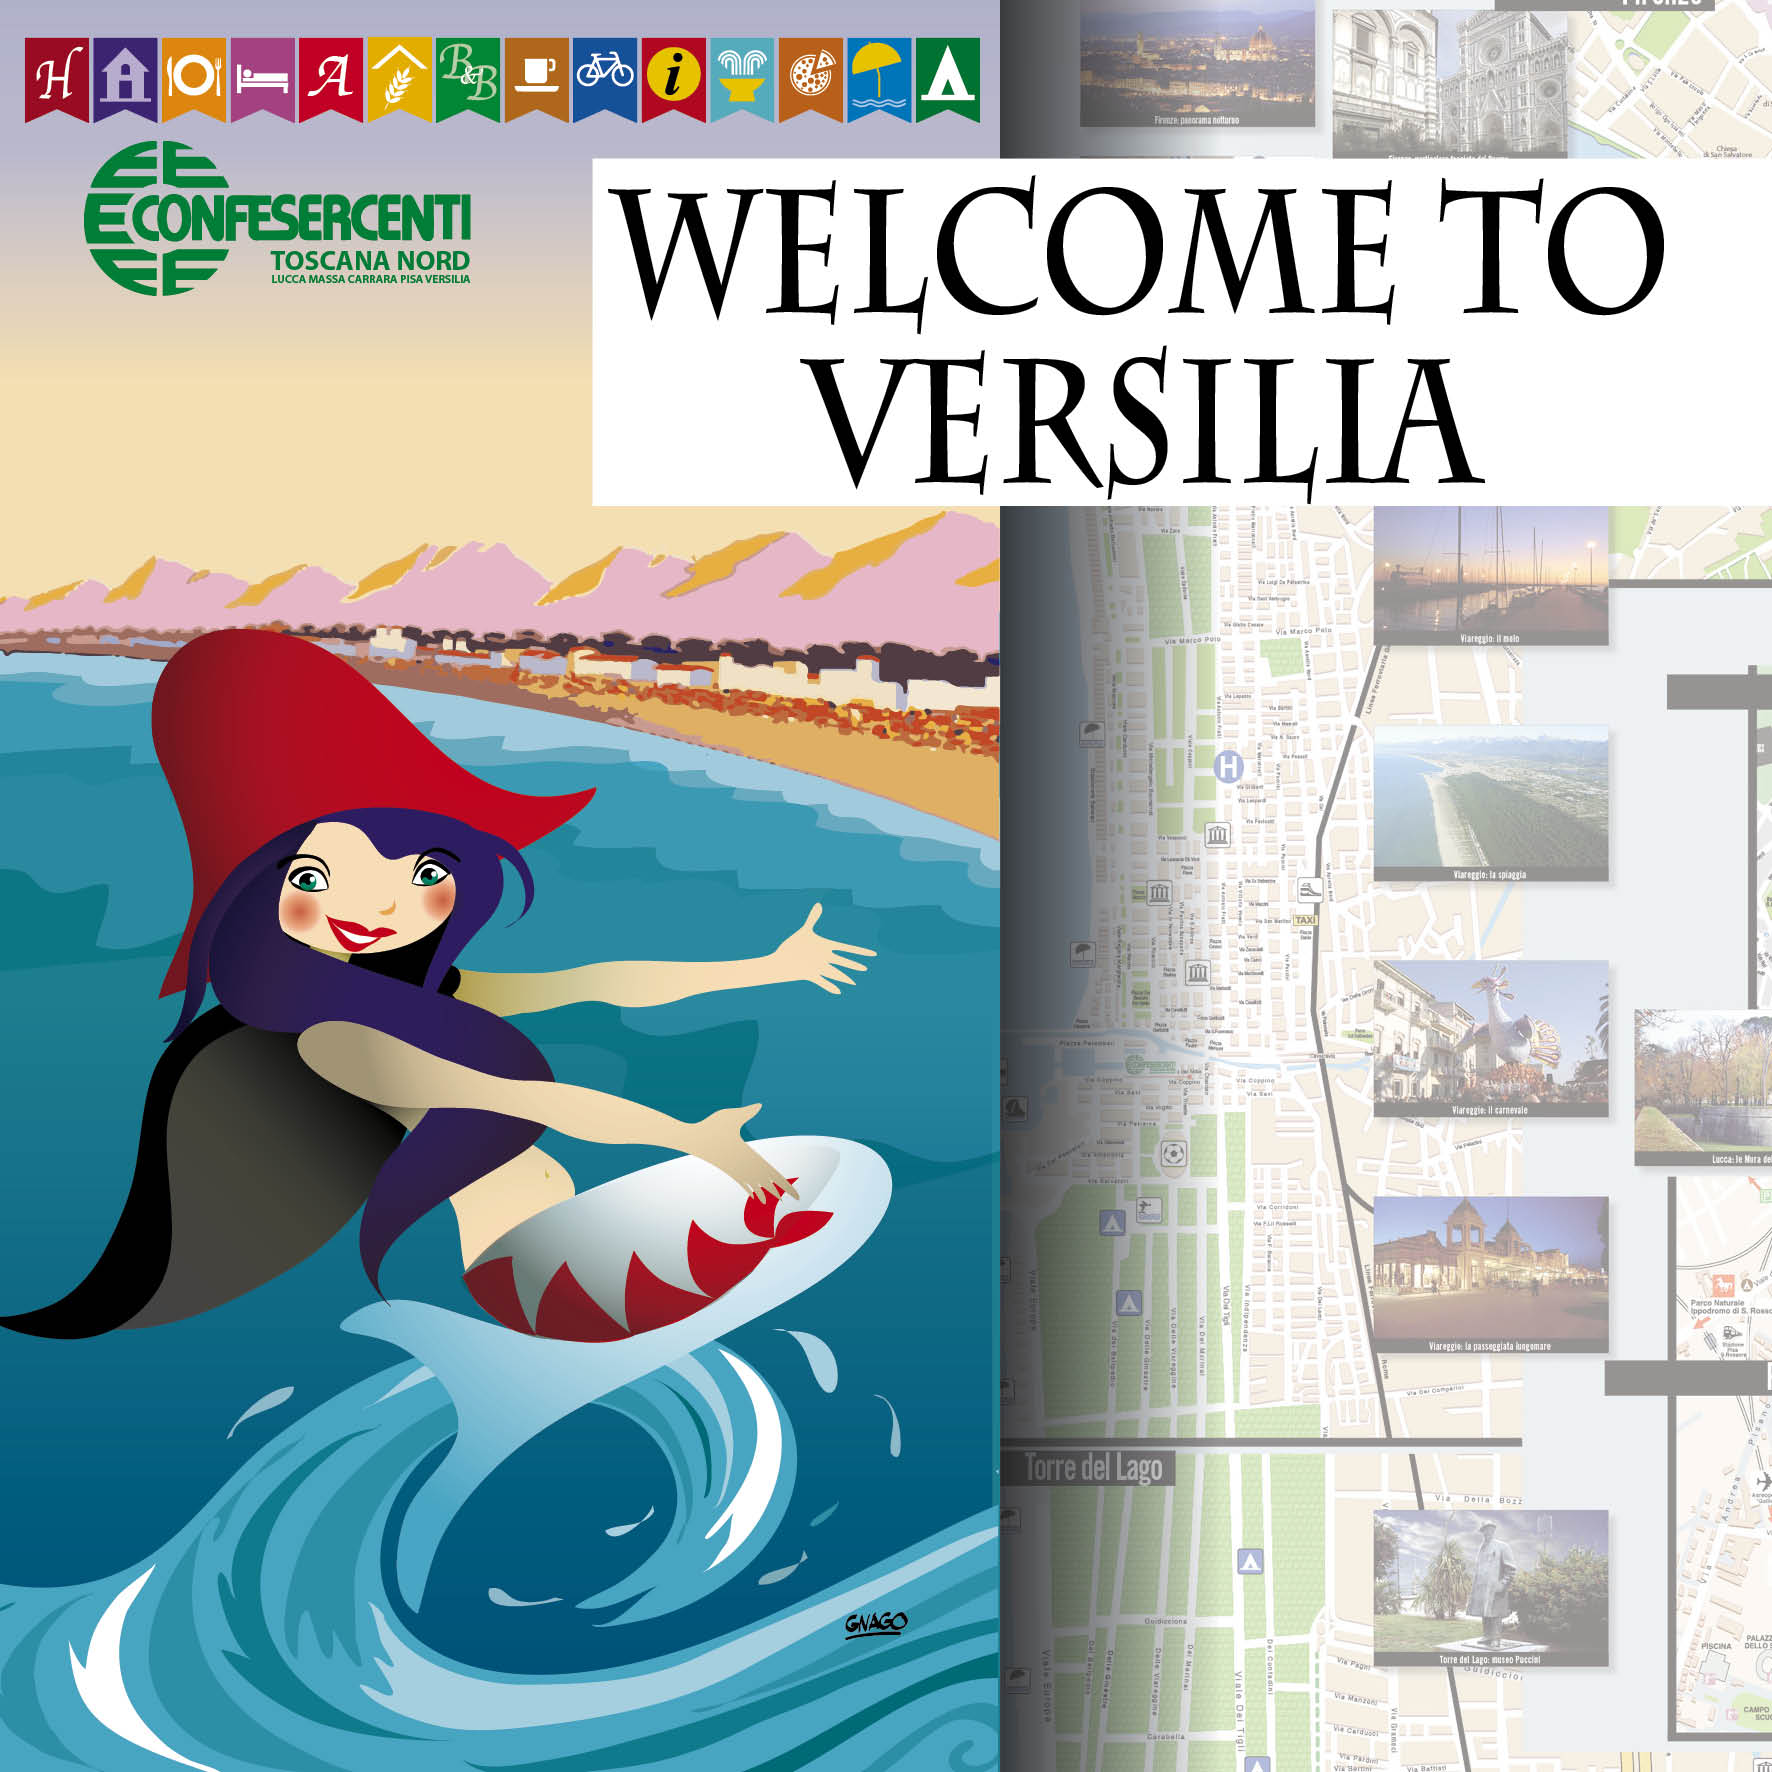 “Welcome to Versilia”, ecco la nuova cartina turistica realizzata da Confesercenti